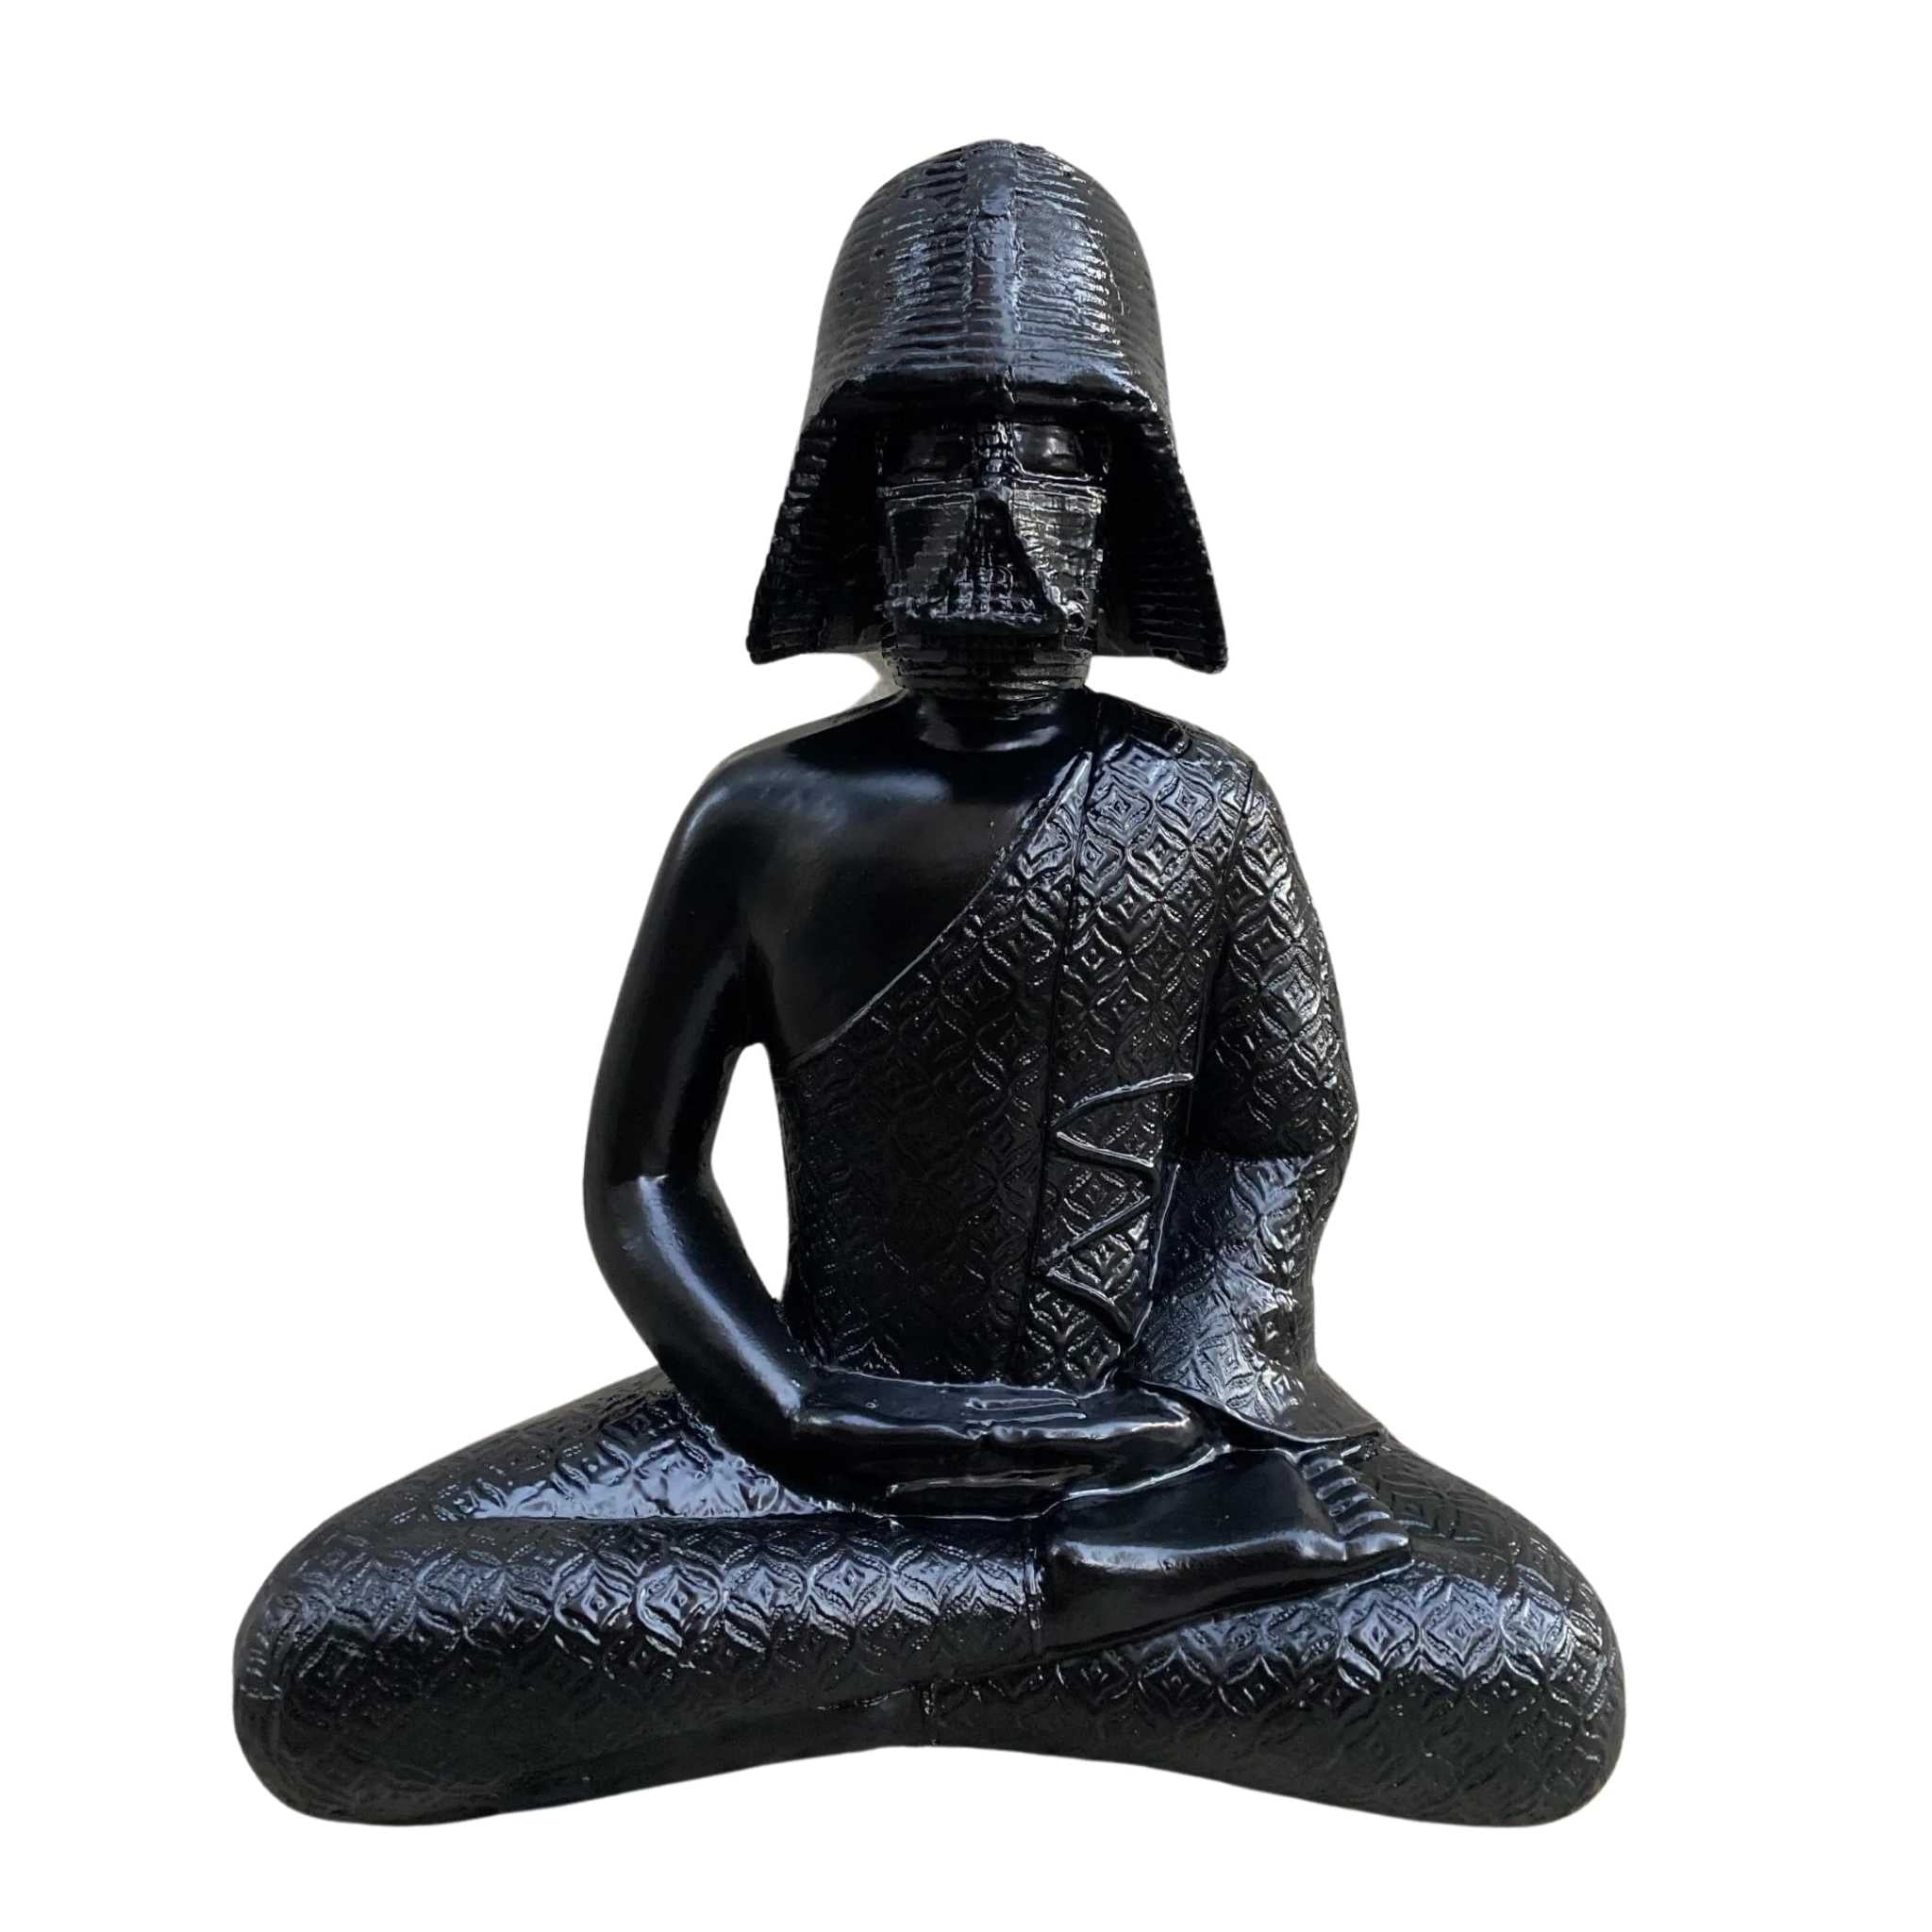 Darth Vader in Meditation